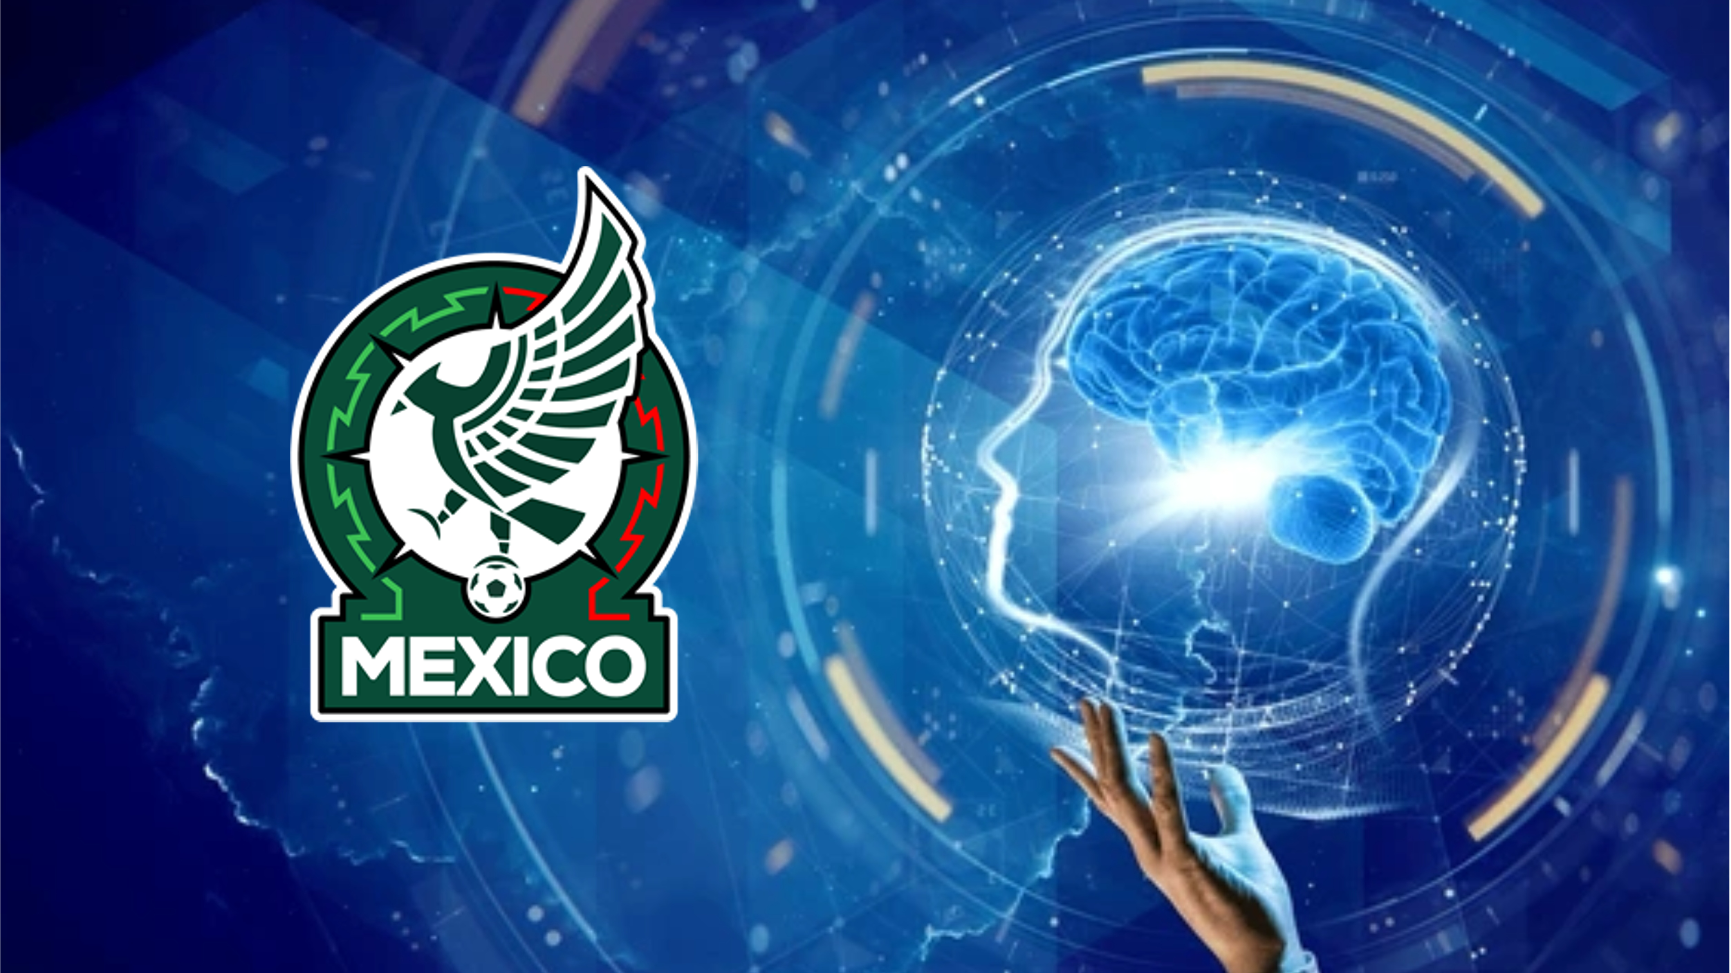 El jugador mexicano que tiene la mejor mentalidad, compensaba el talento, según Faitelson